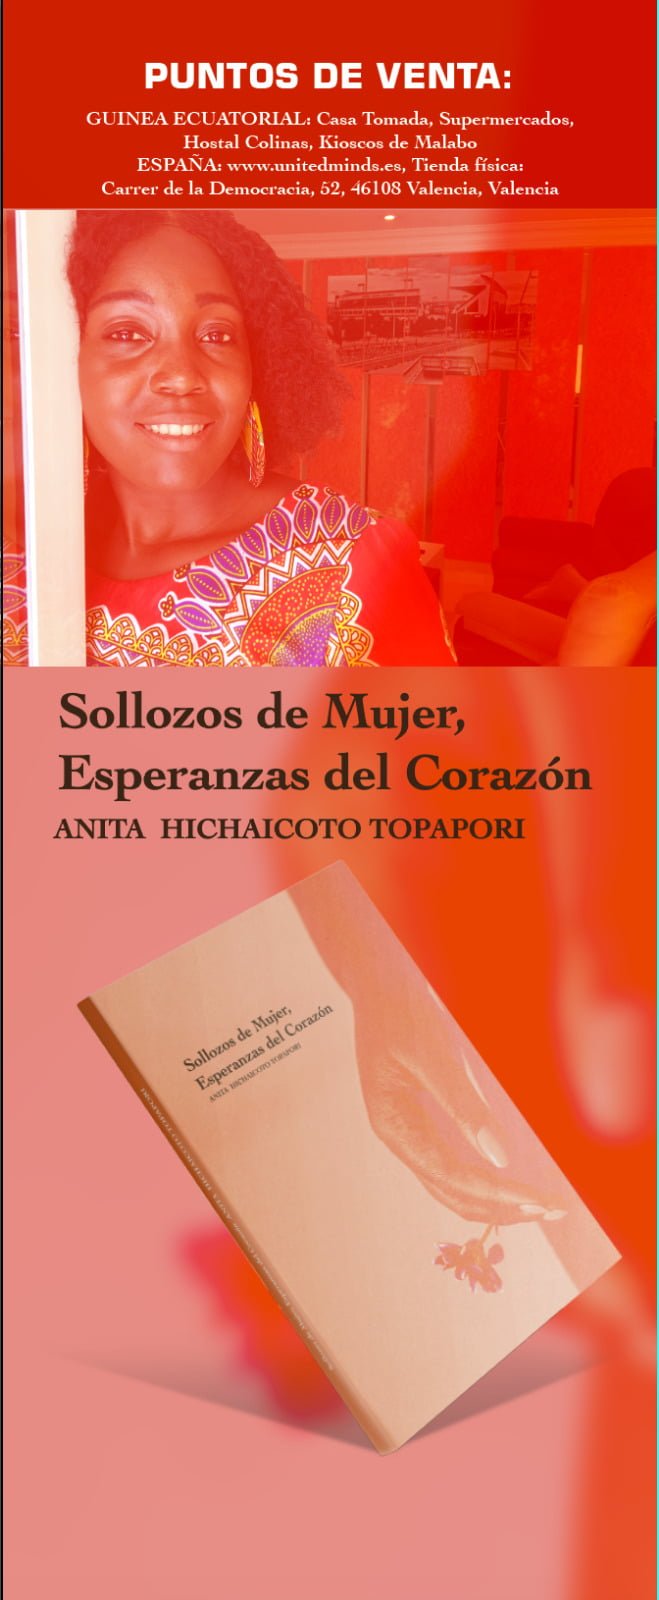 Book Cover: Sollozos de mujer: Esperanzas del corazón